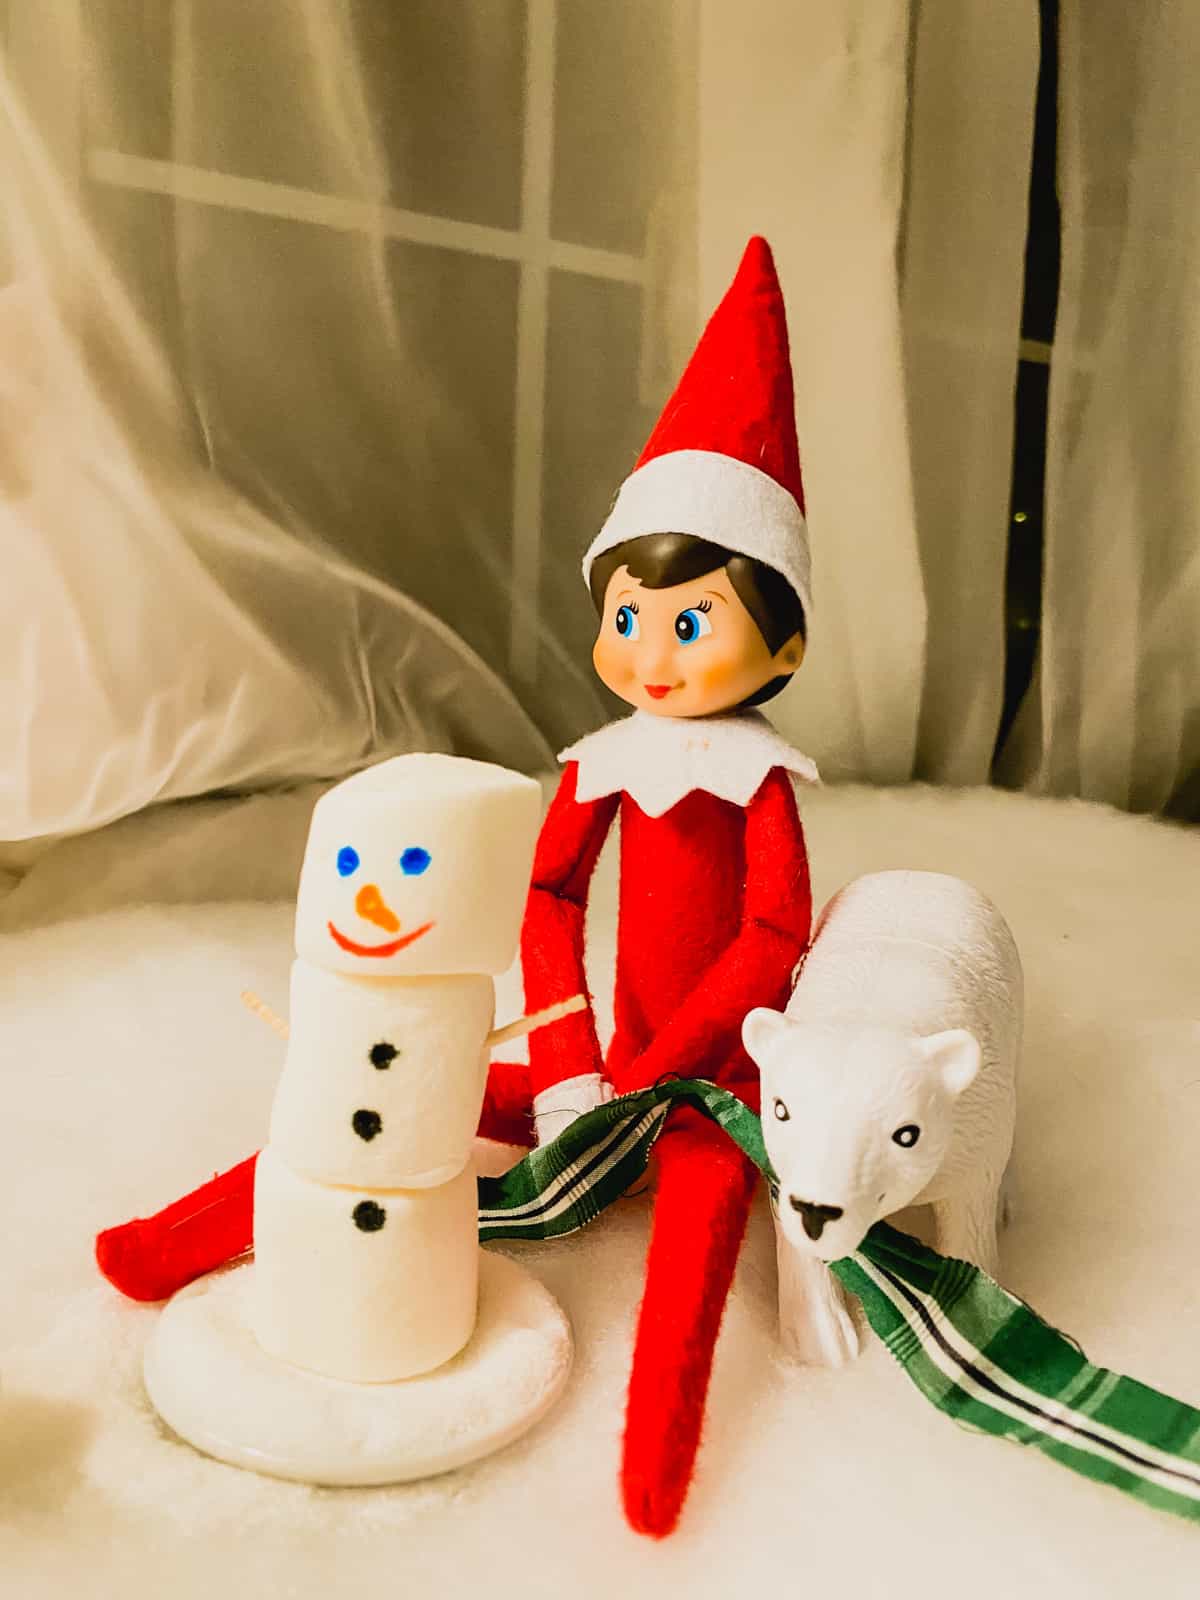 An elf on the shelf with a snowman and polar bear.